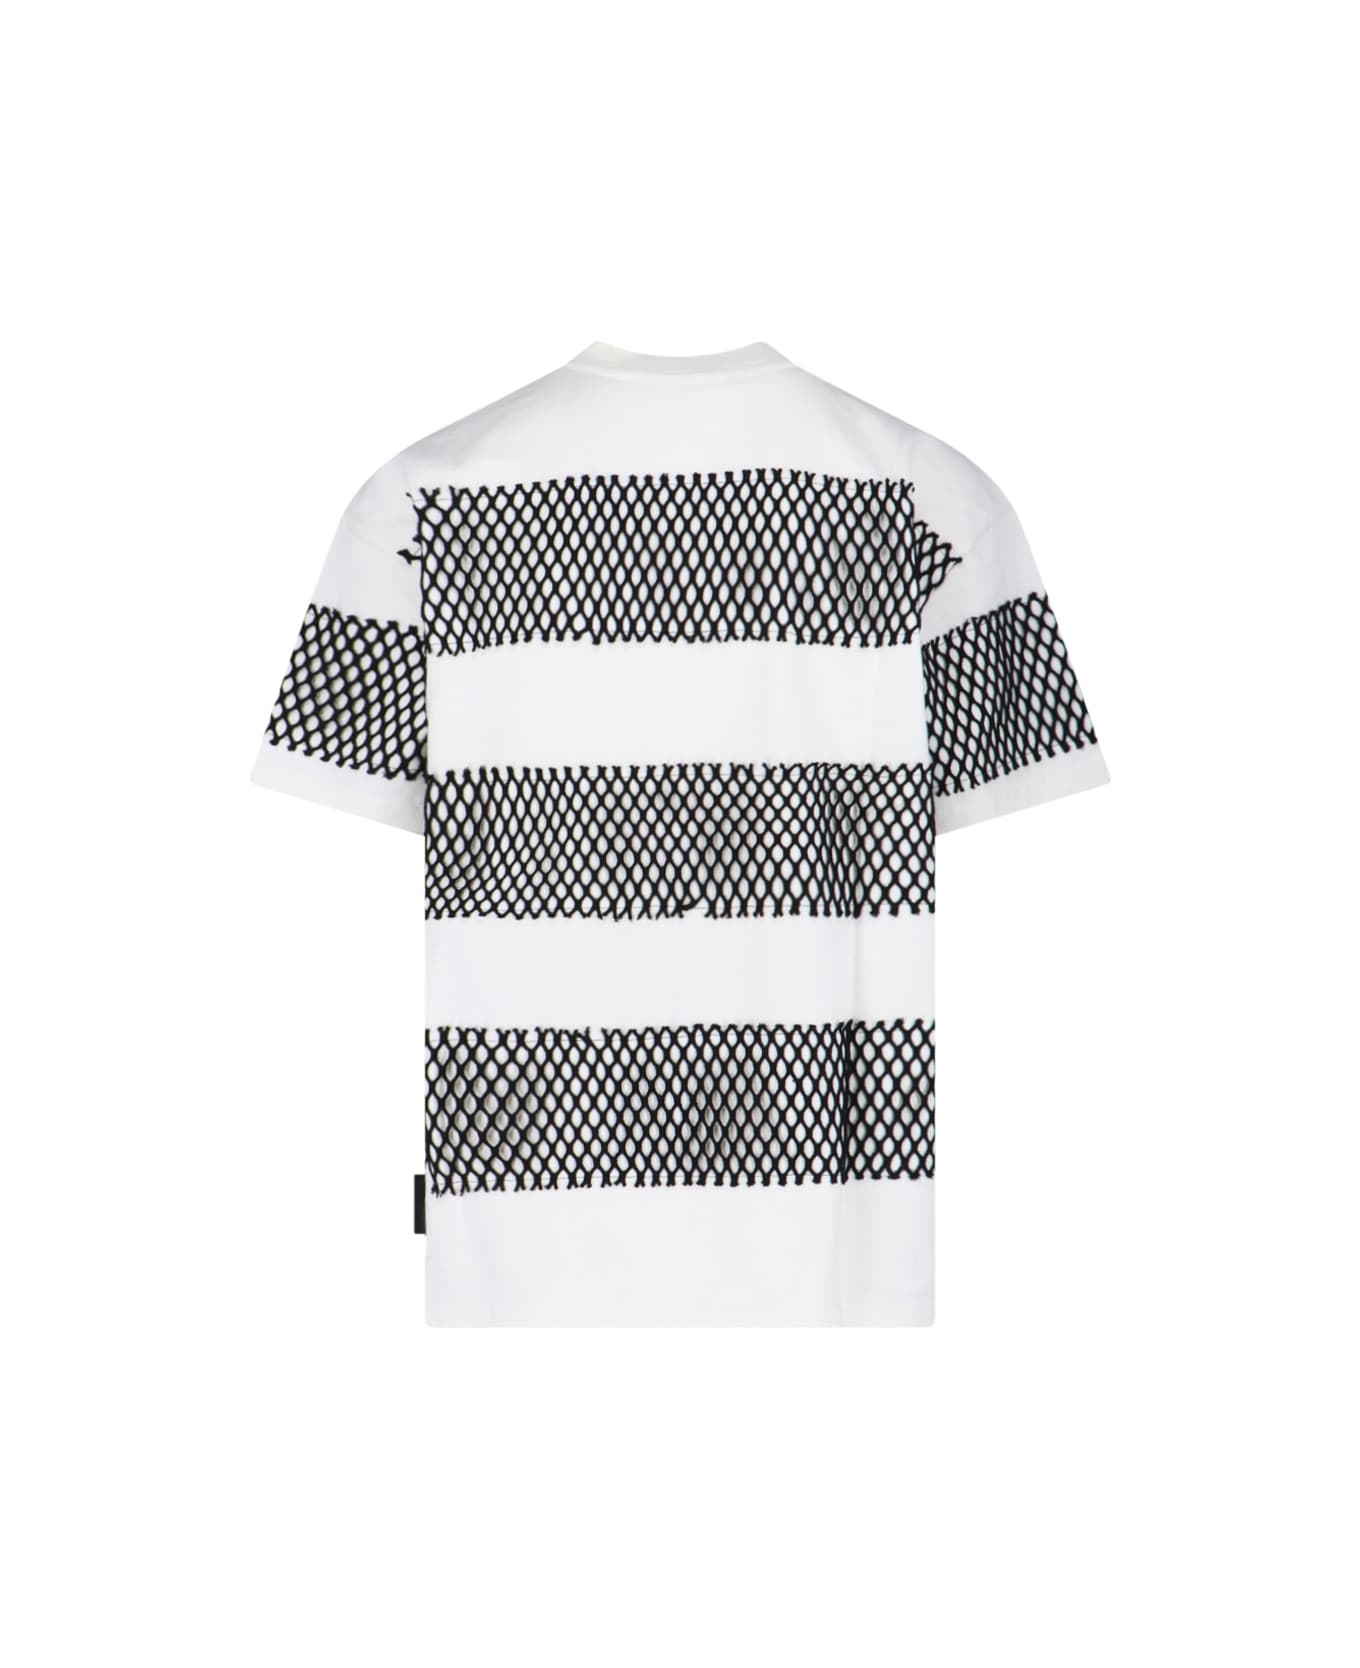 MSGM Stripe T-shirt - White